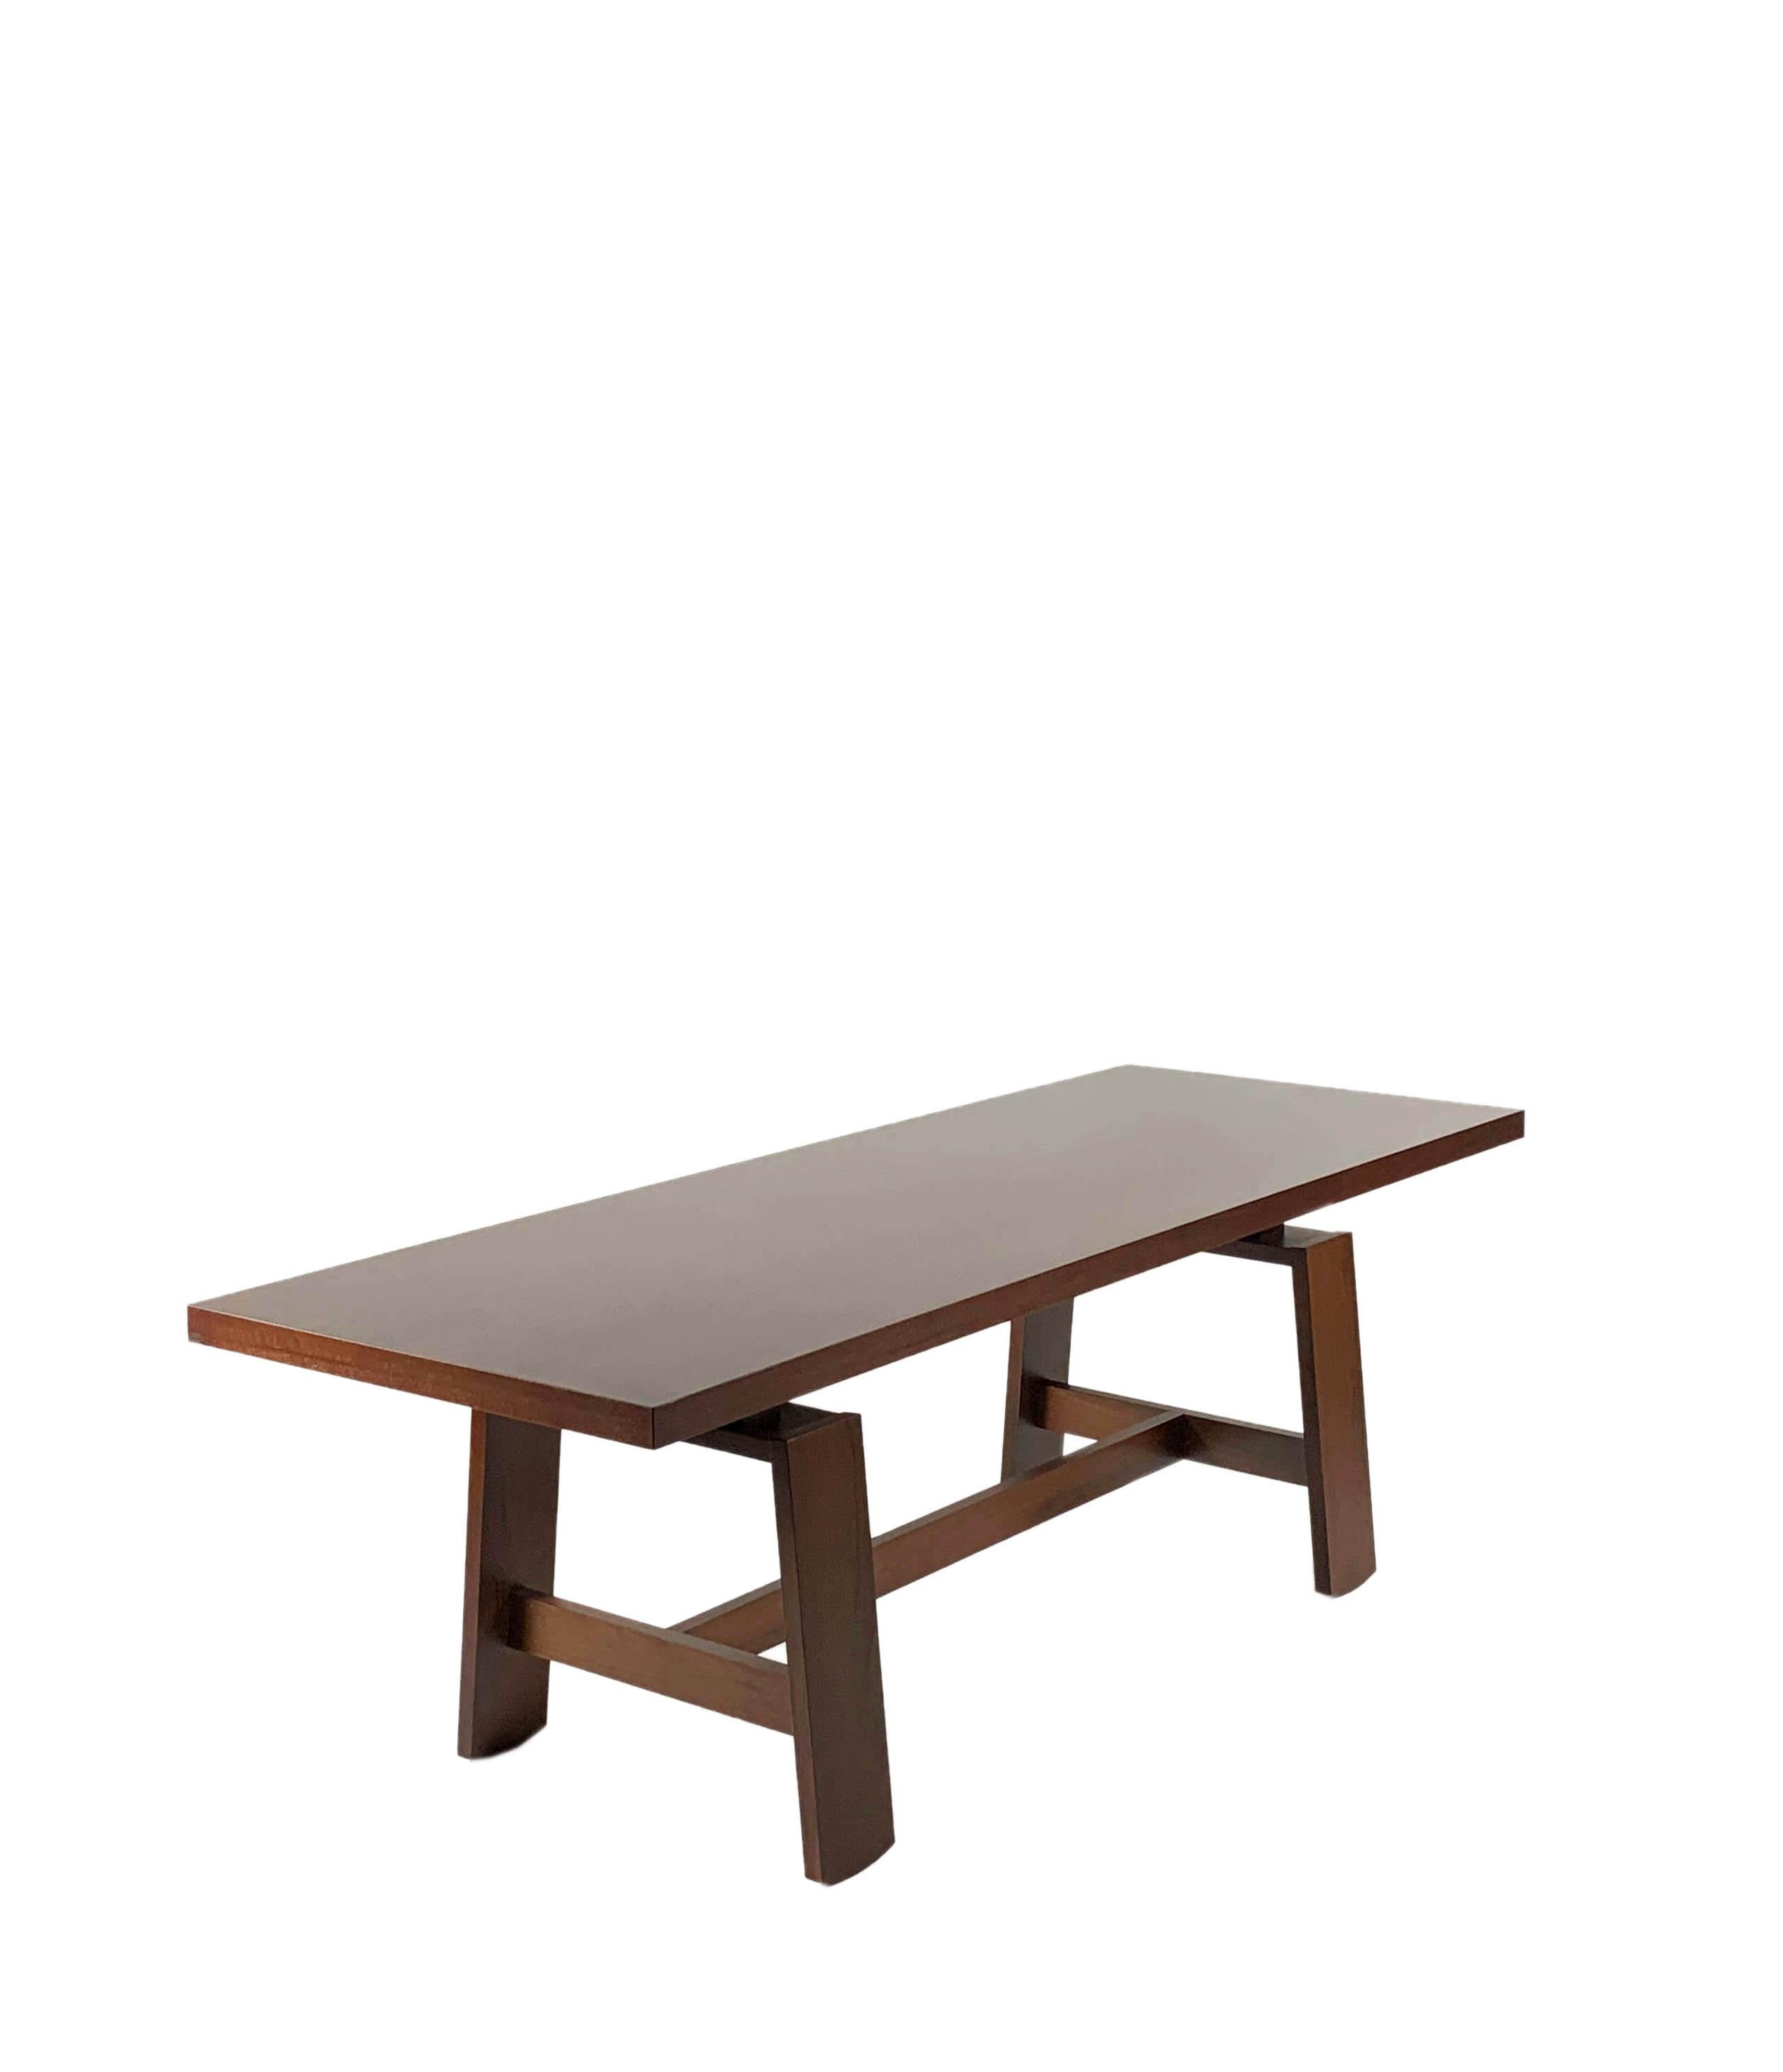 Pranzo est une table de salle à manger clairement inspirée de la tradition de l'ébénisterie lombarde en bois de noyer, qui illustre l'approche essentielle de Silvio Coppola en matière de design ; un design dépourvu d'excès stylistiques éphémères, de